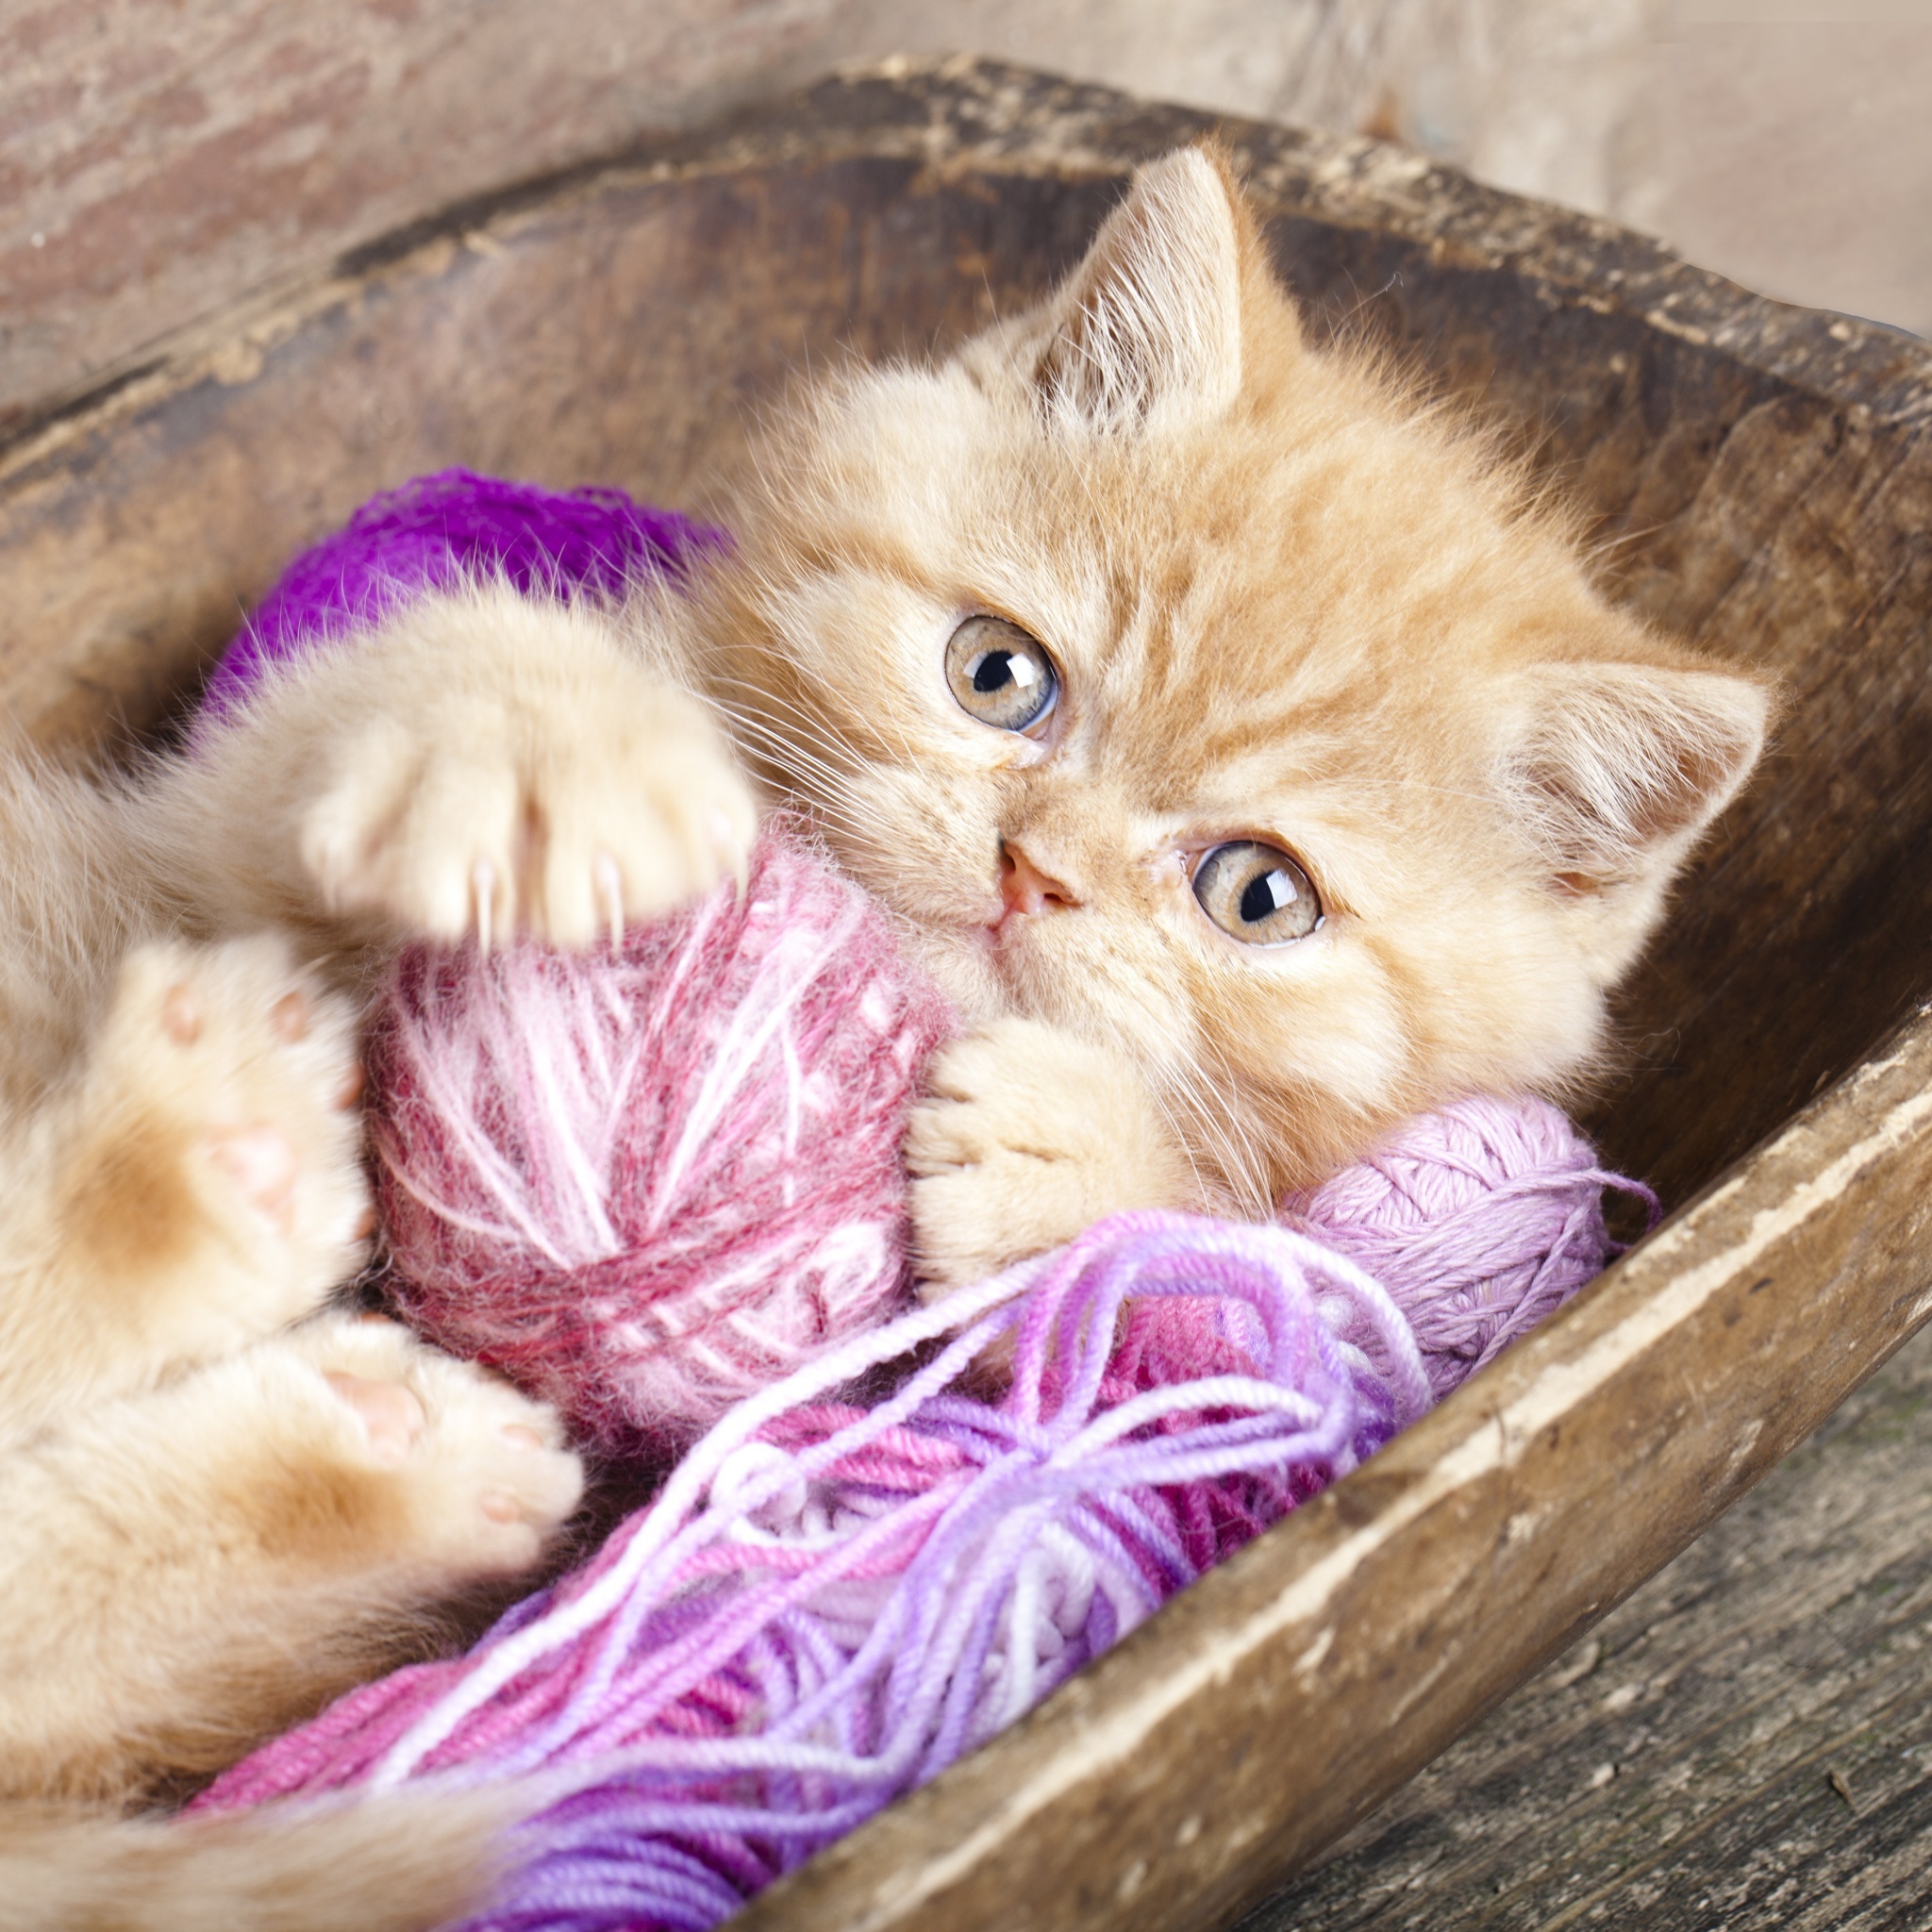 Cute Kitten Playing With A Ball Of Yarn screenshot #1 2048x2048